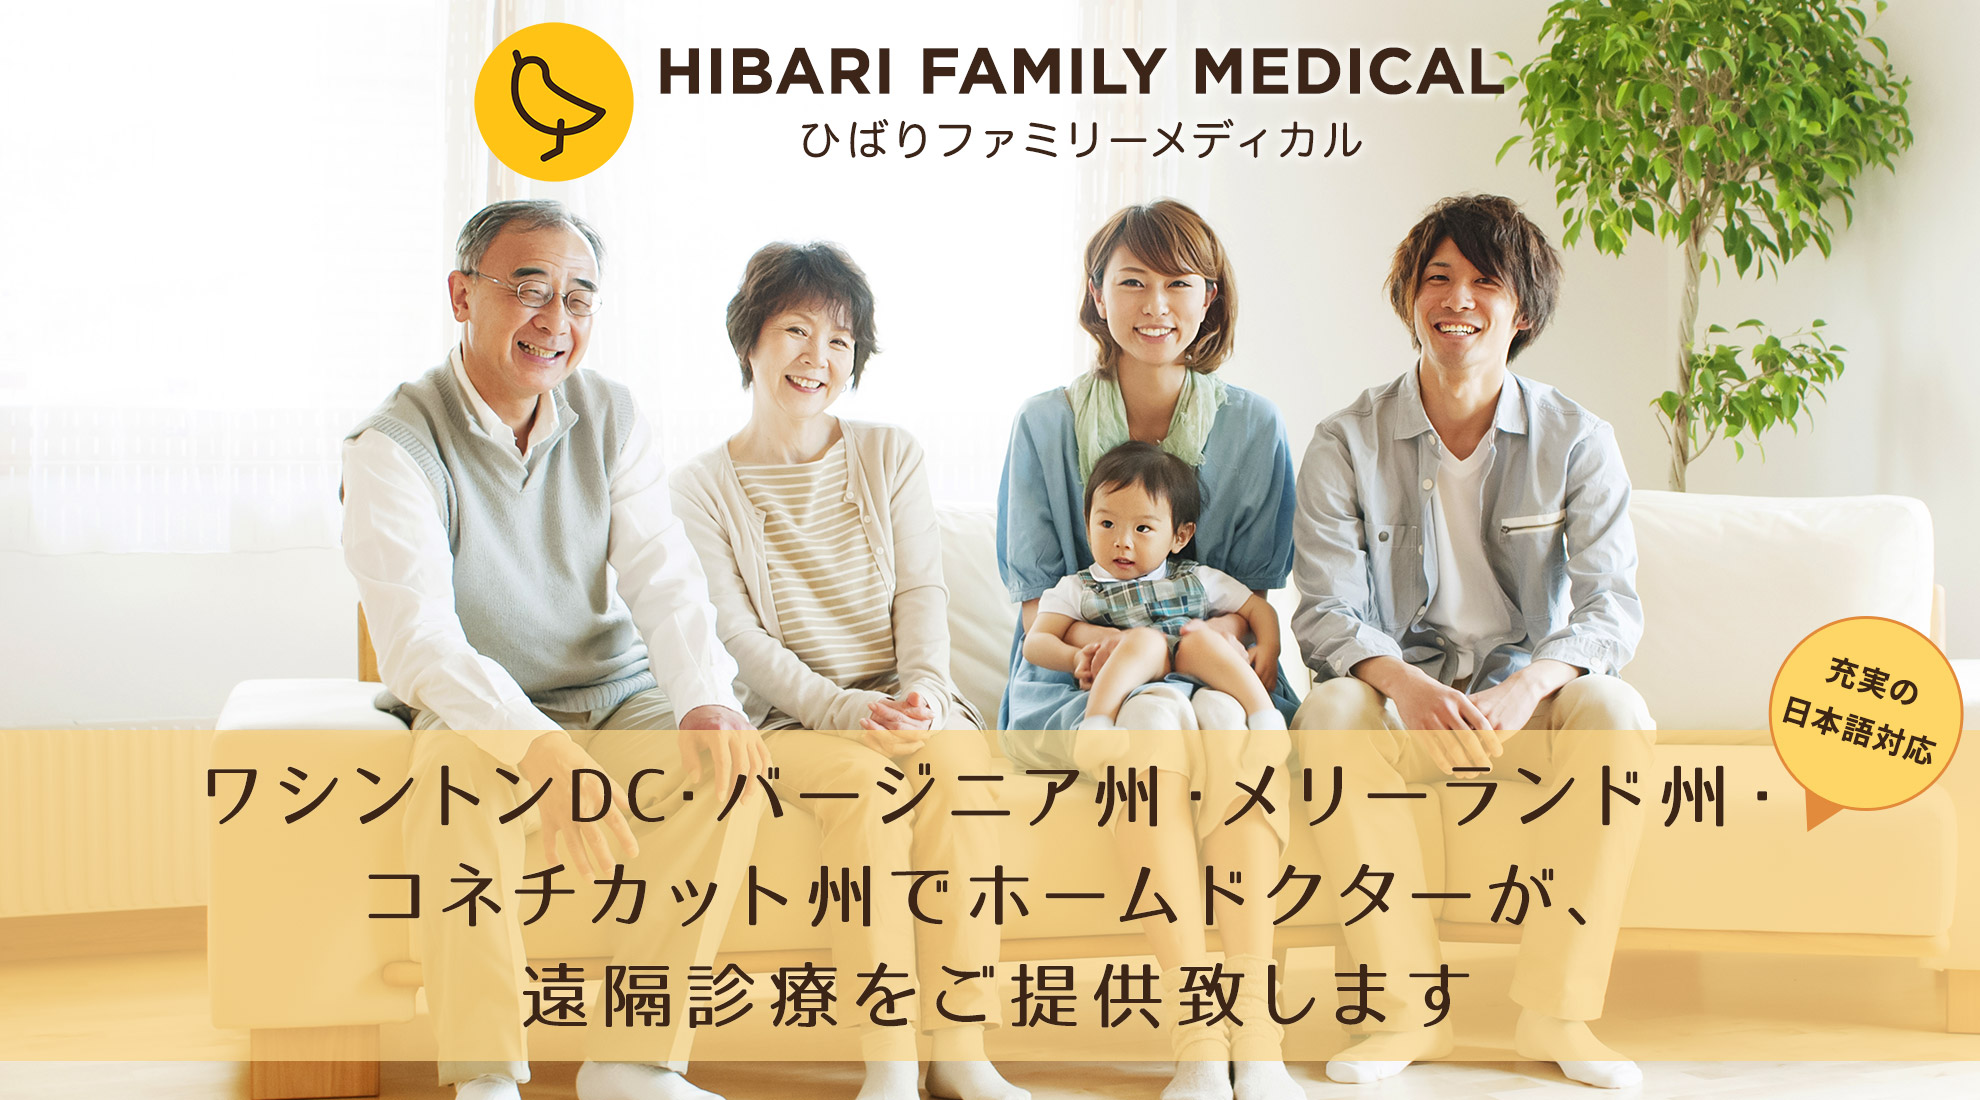 ワシントンDC・バージニア州・メリーランド州・コネチカット州でホームドクターが遠隔診療をご提供致します Hibari Family Medical 充実の日本語対応